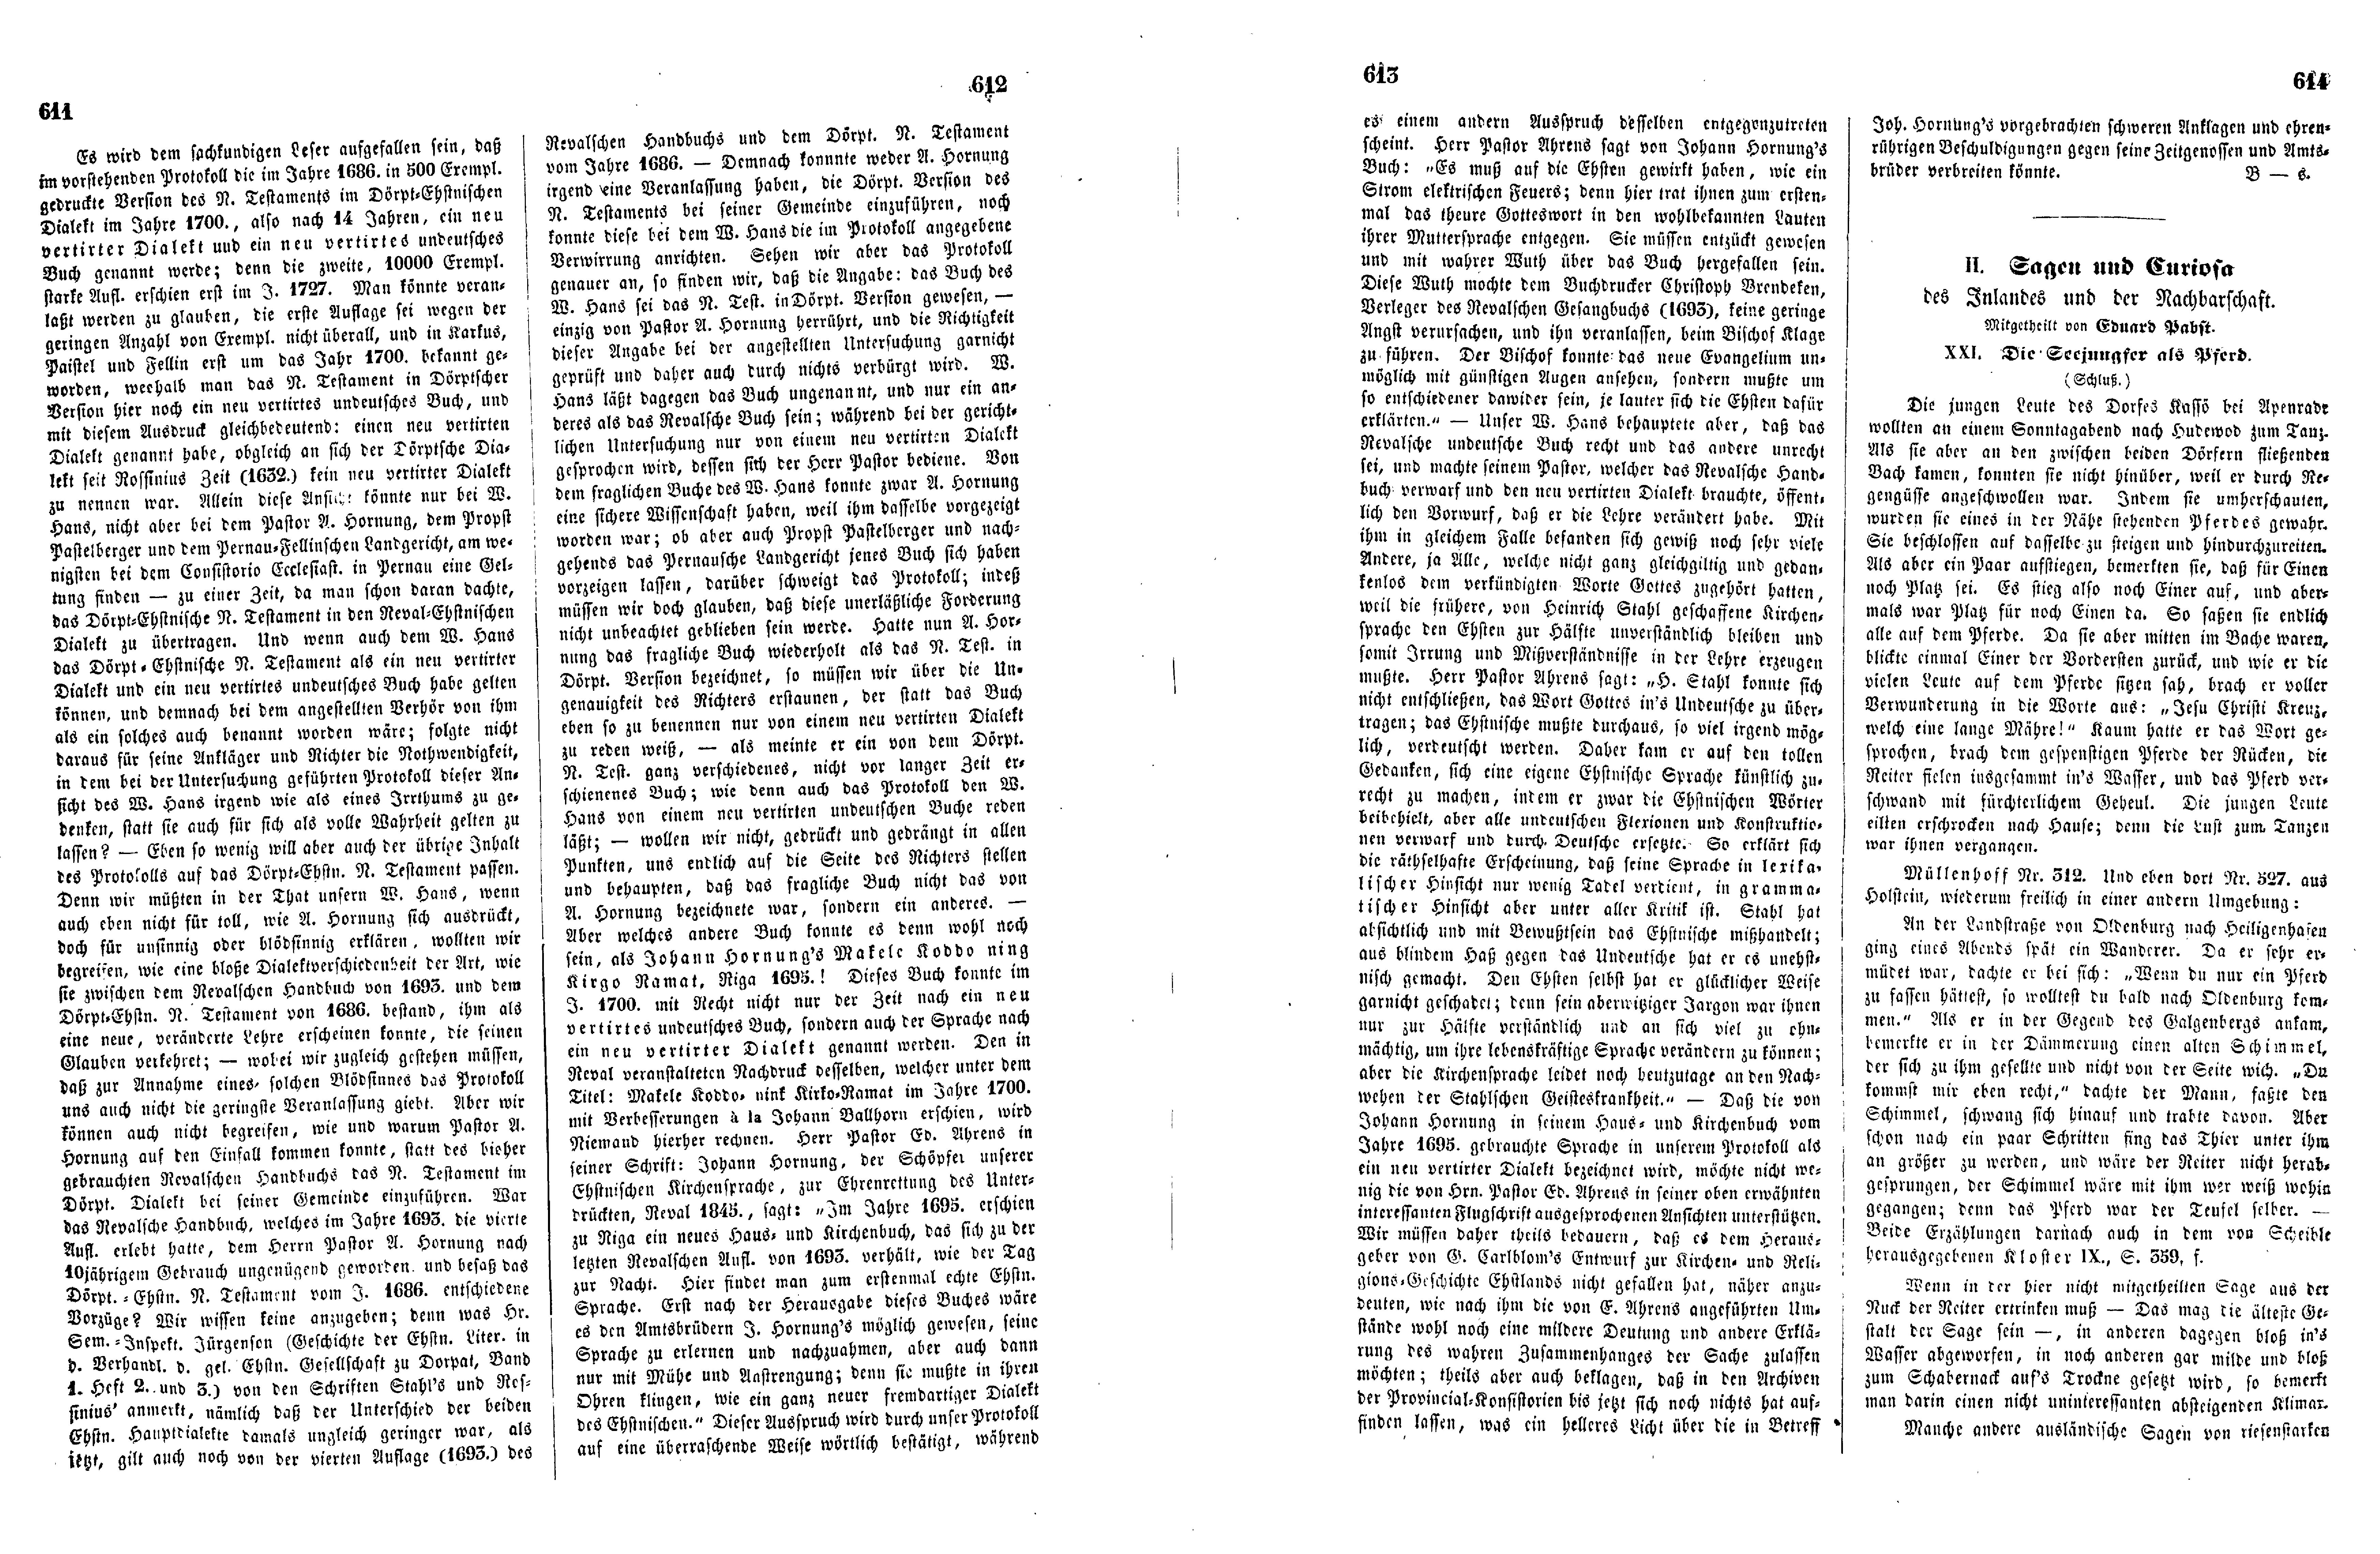 Das Inland [17] (1852) | 158. (611-614) Основной текст